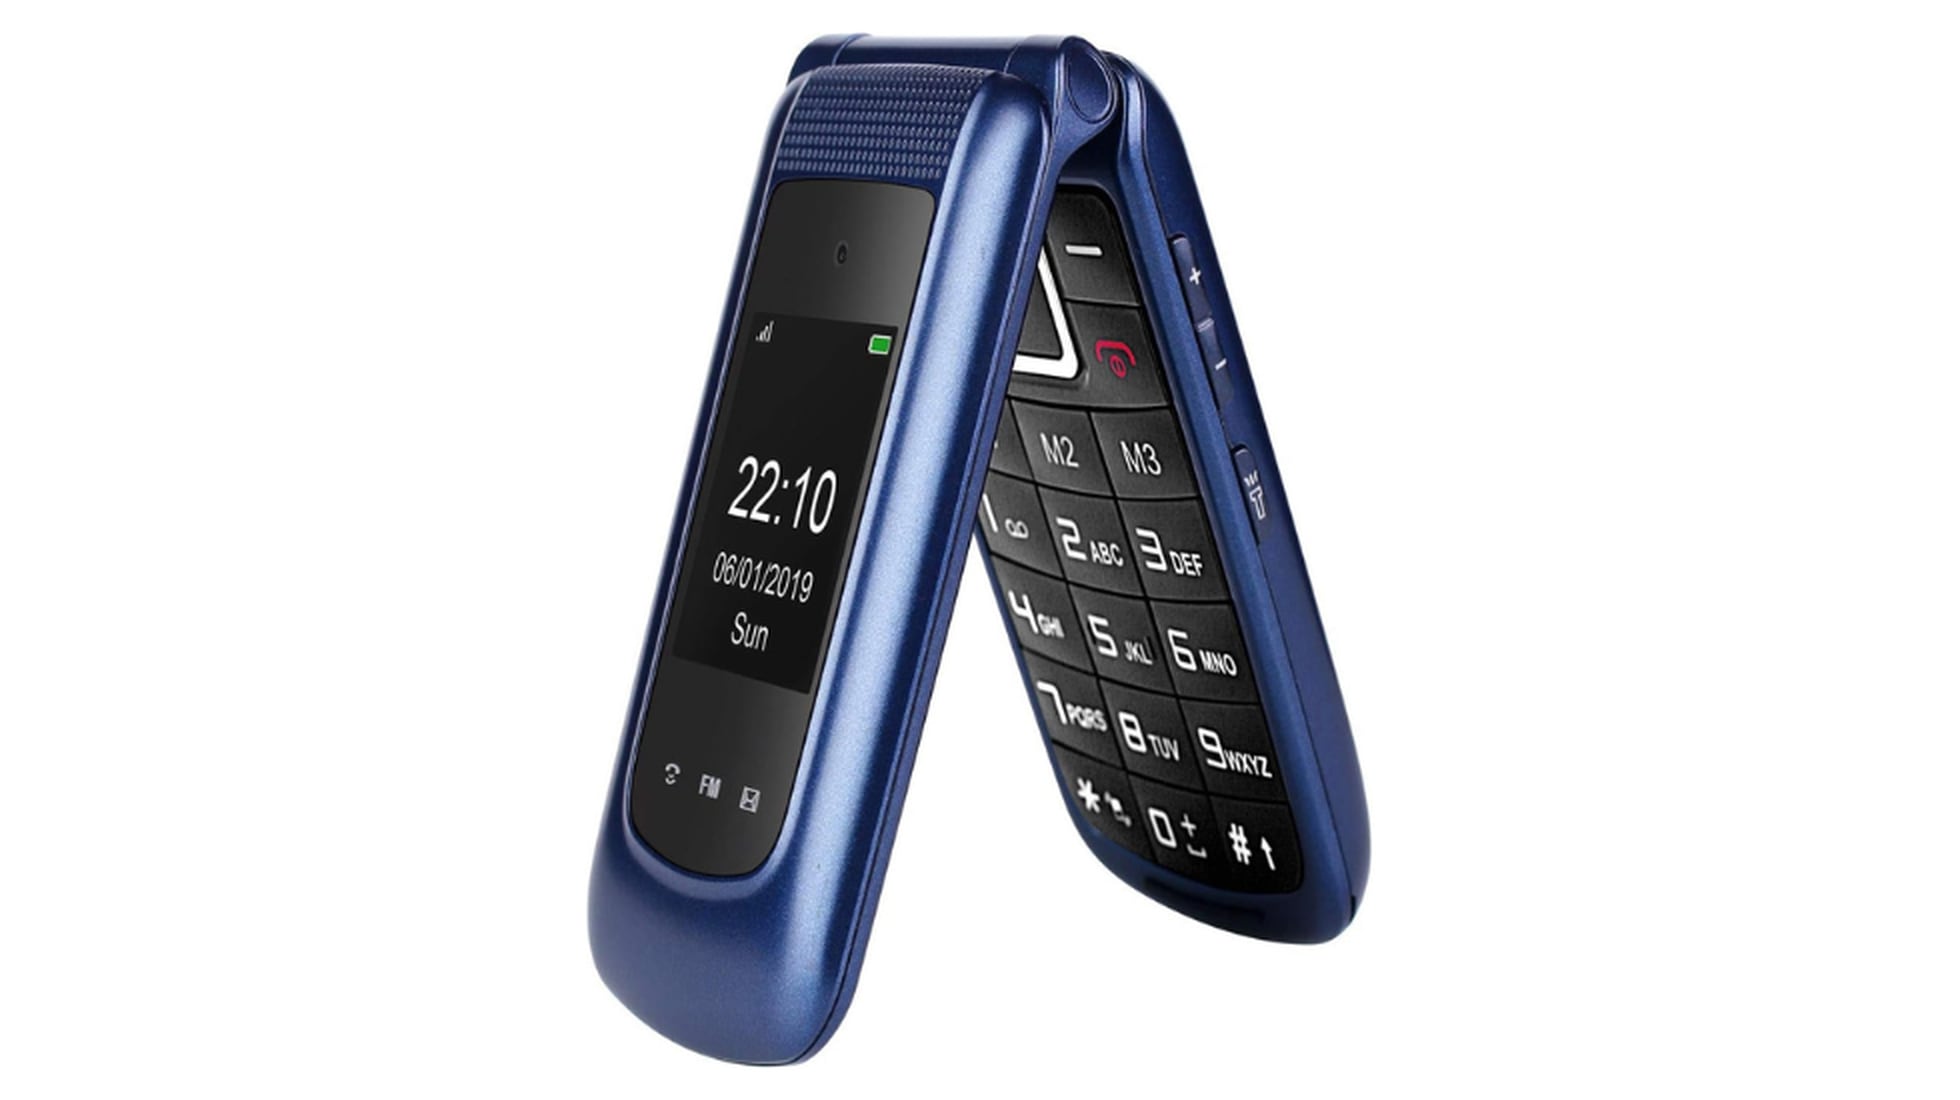 Teléfono móvil para mayores - 2024 ⭐️ Teléfono móvil para ancianos.